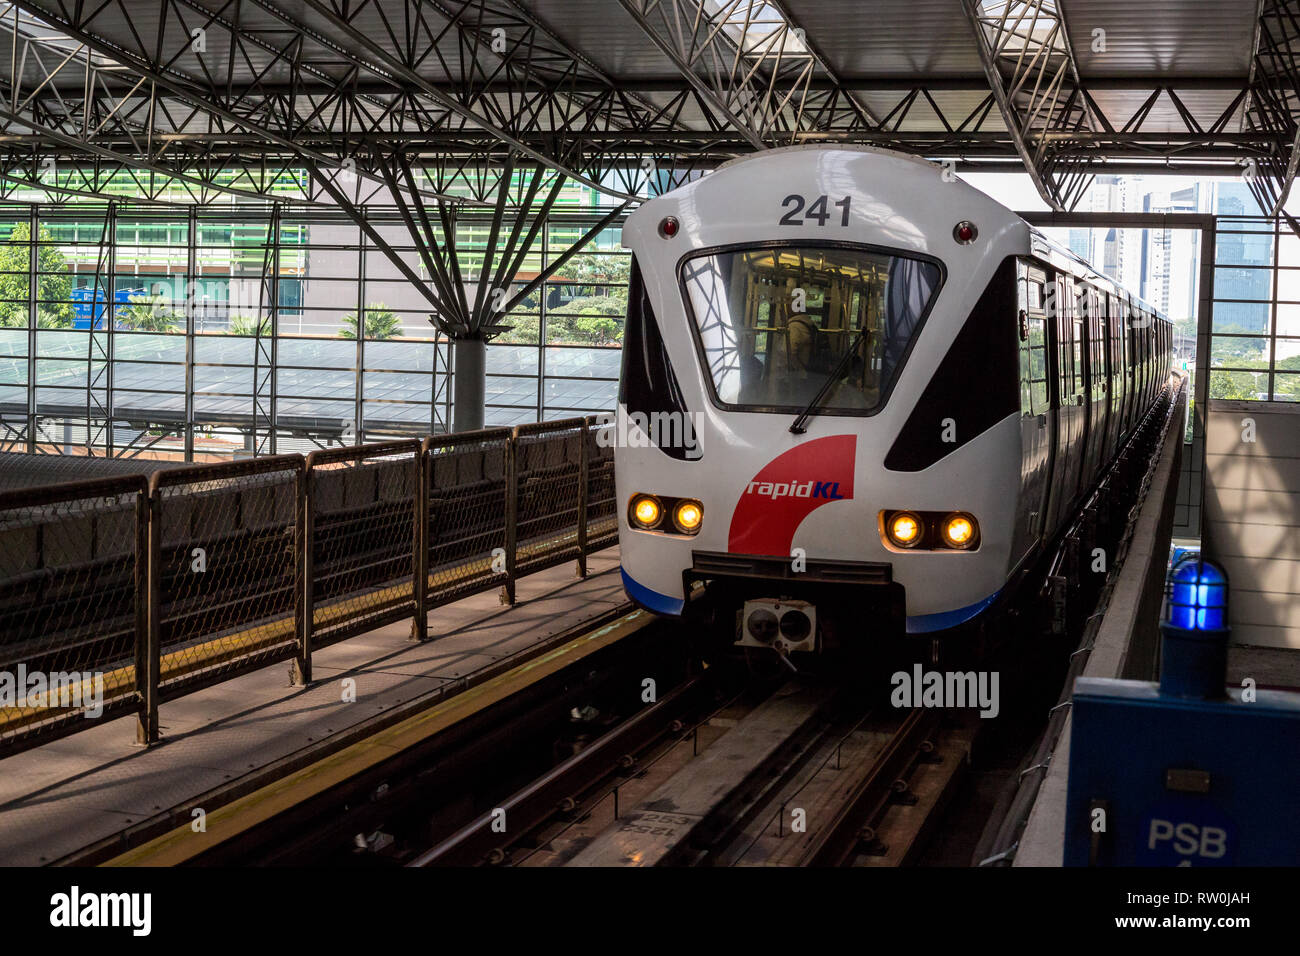 Treno LRT (Light Rail Transit) che arriva alla stazione KL Sentral, Kuala Lumpur, Malesia. Foto Stock